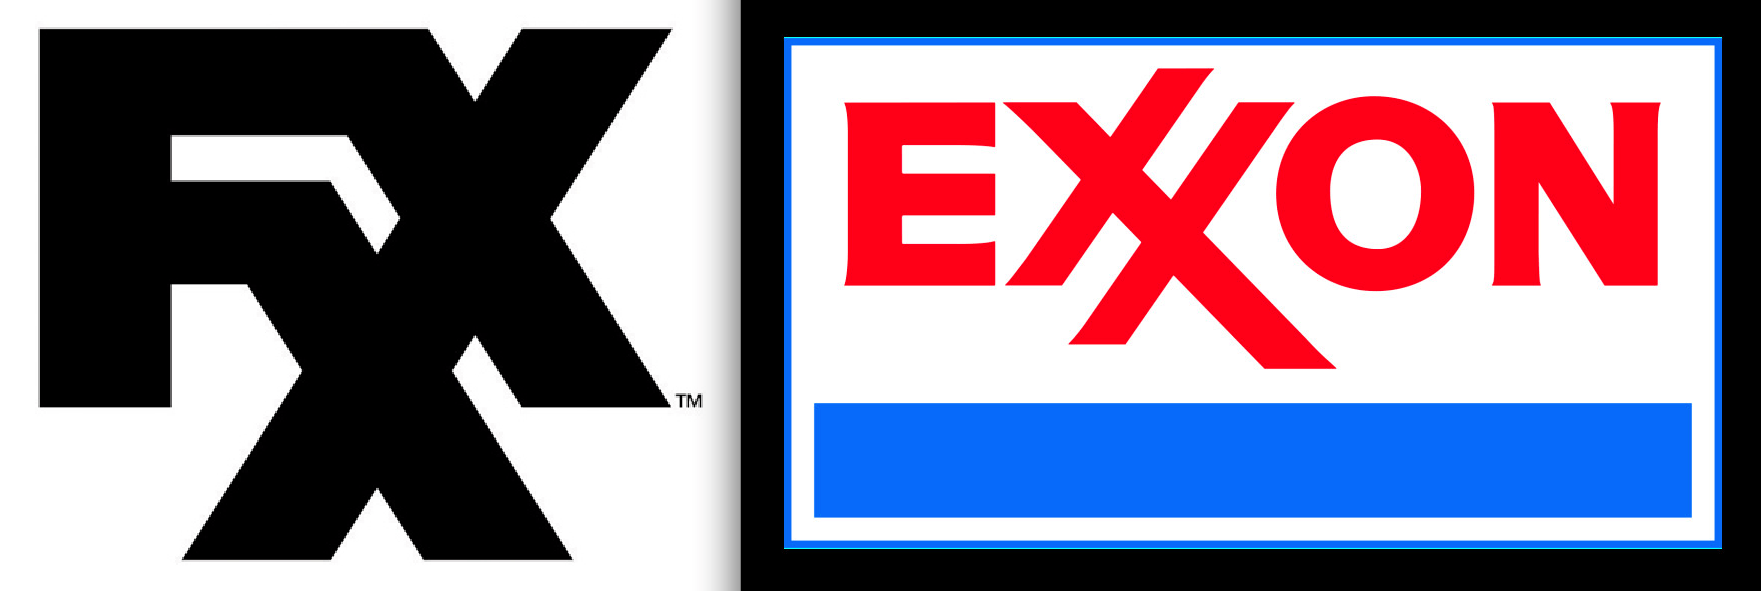 Exxon Logo - Exxon Logos